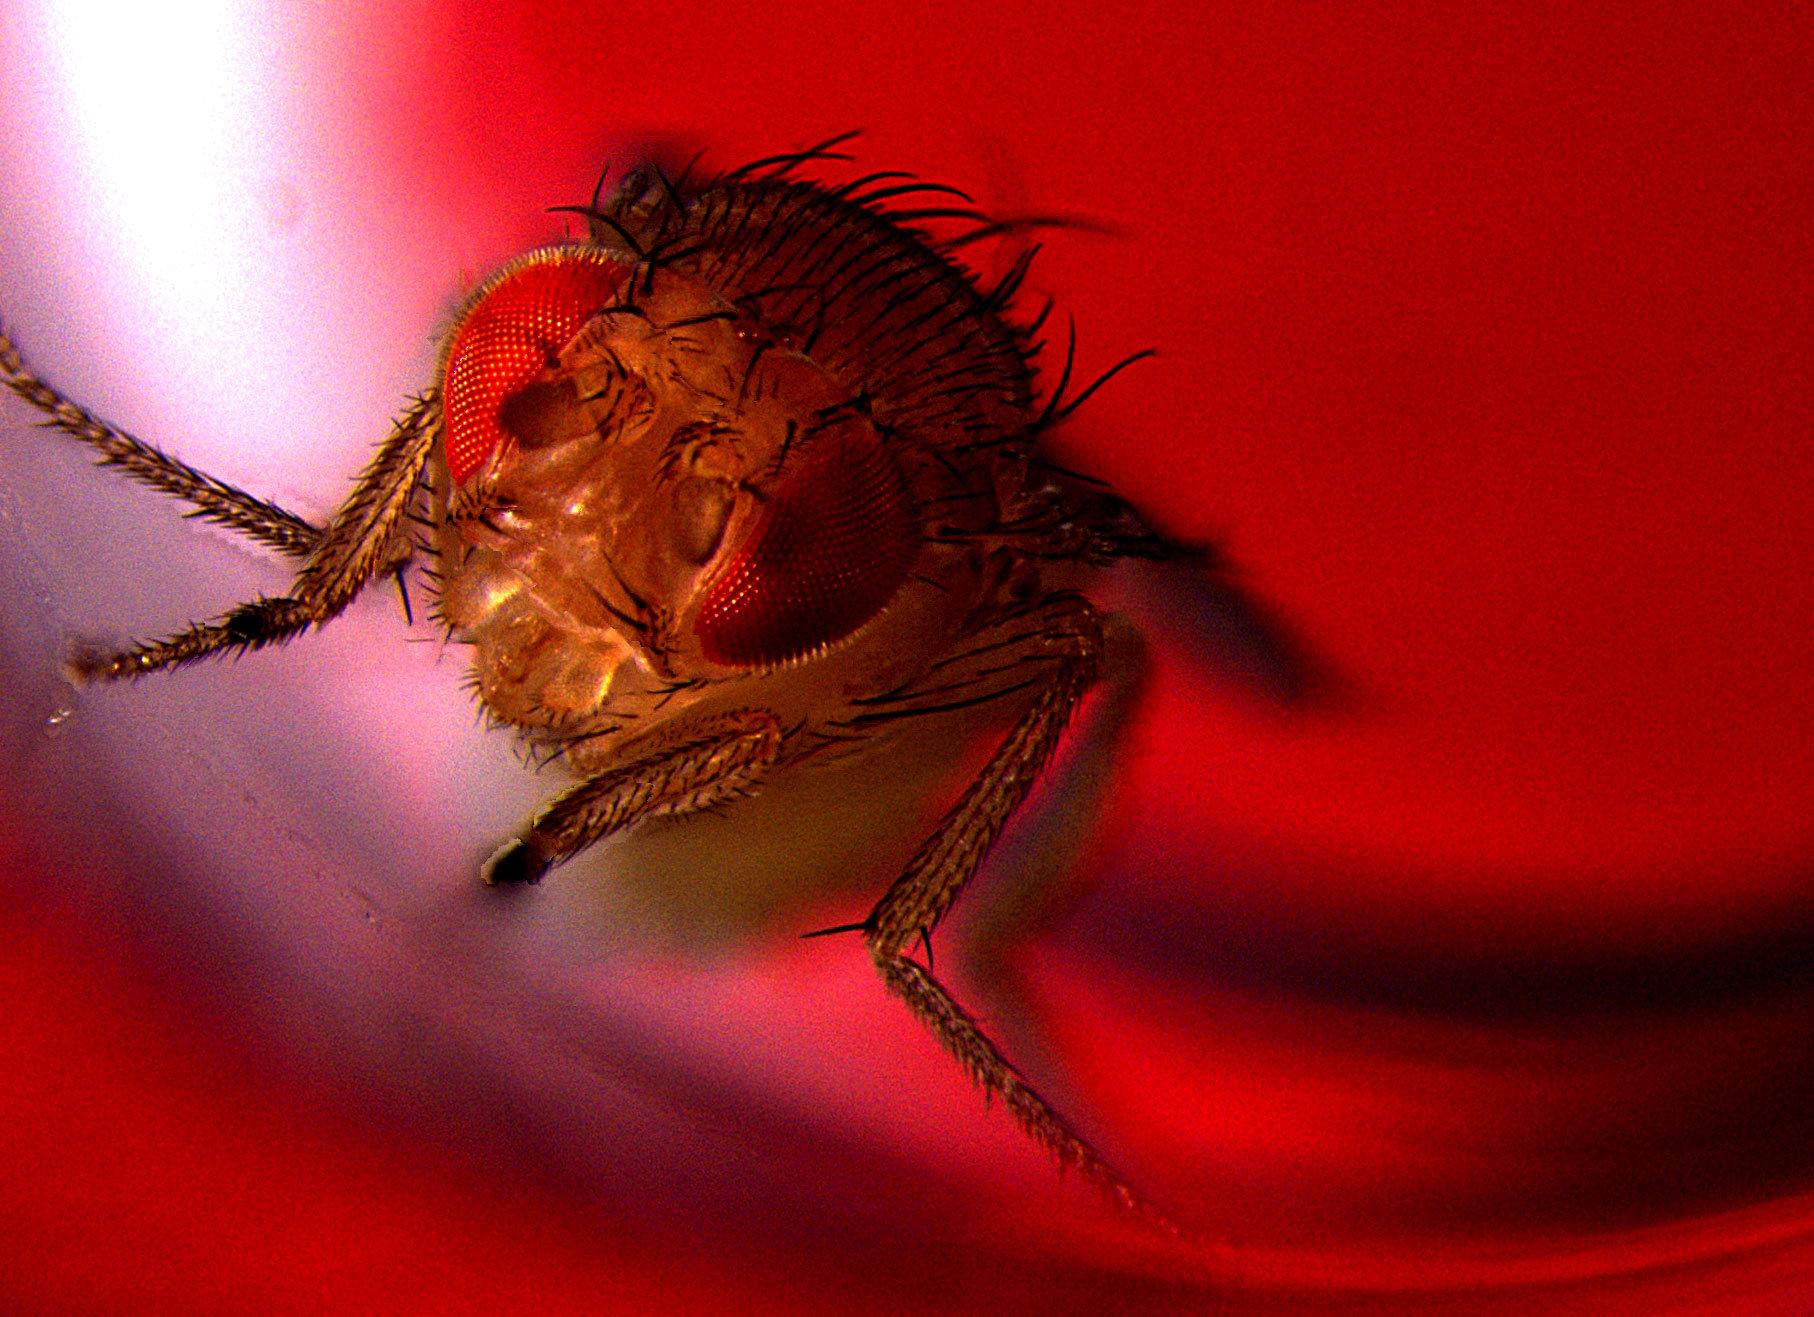 Med hjälp av optogenetik går det att få bananflugor att ejakulera med hjälp av rött ljus. Studierna visar att flugor, precis som människor, njuter av sex.